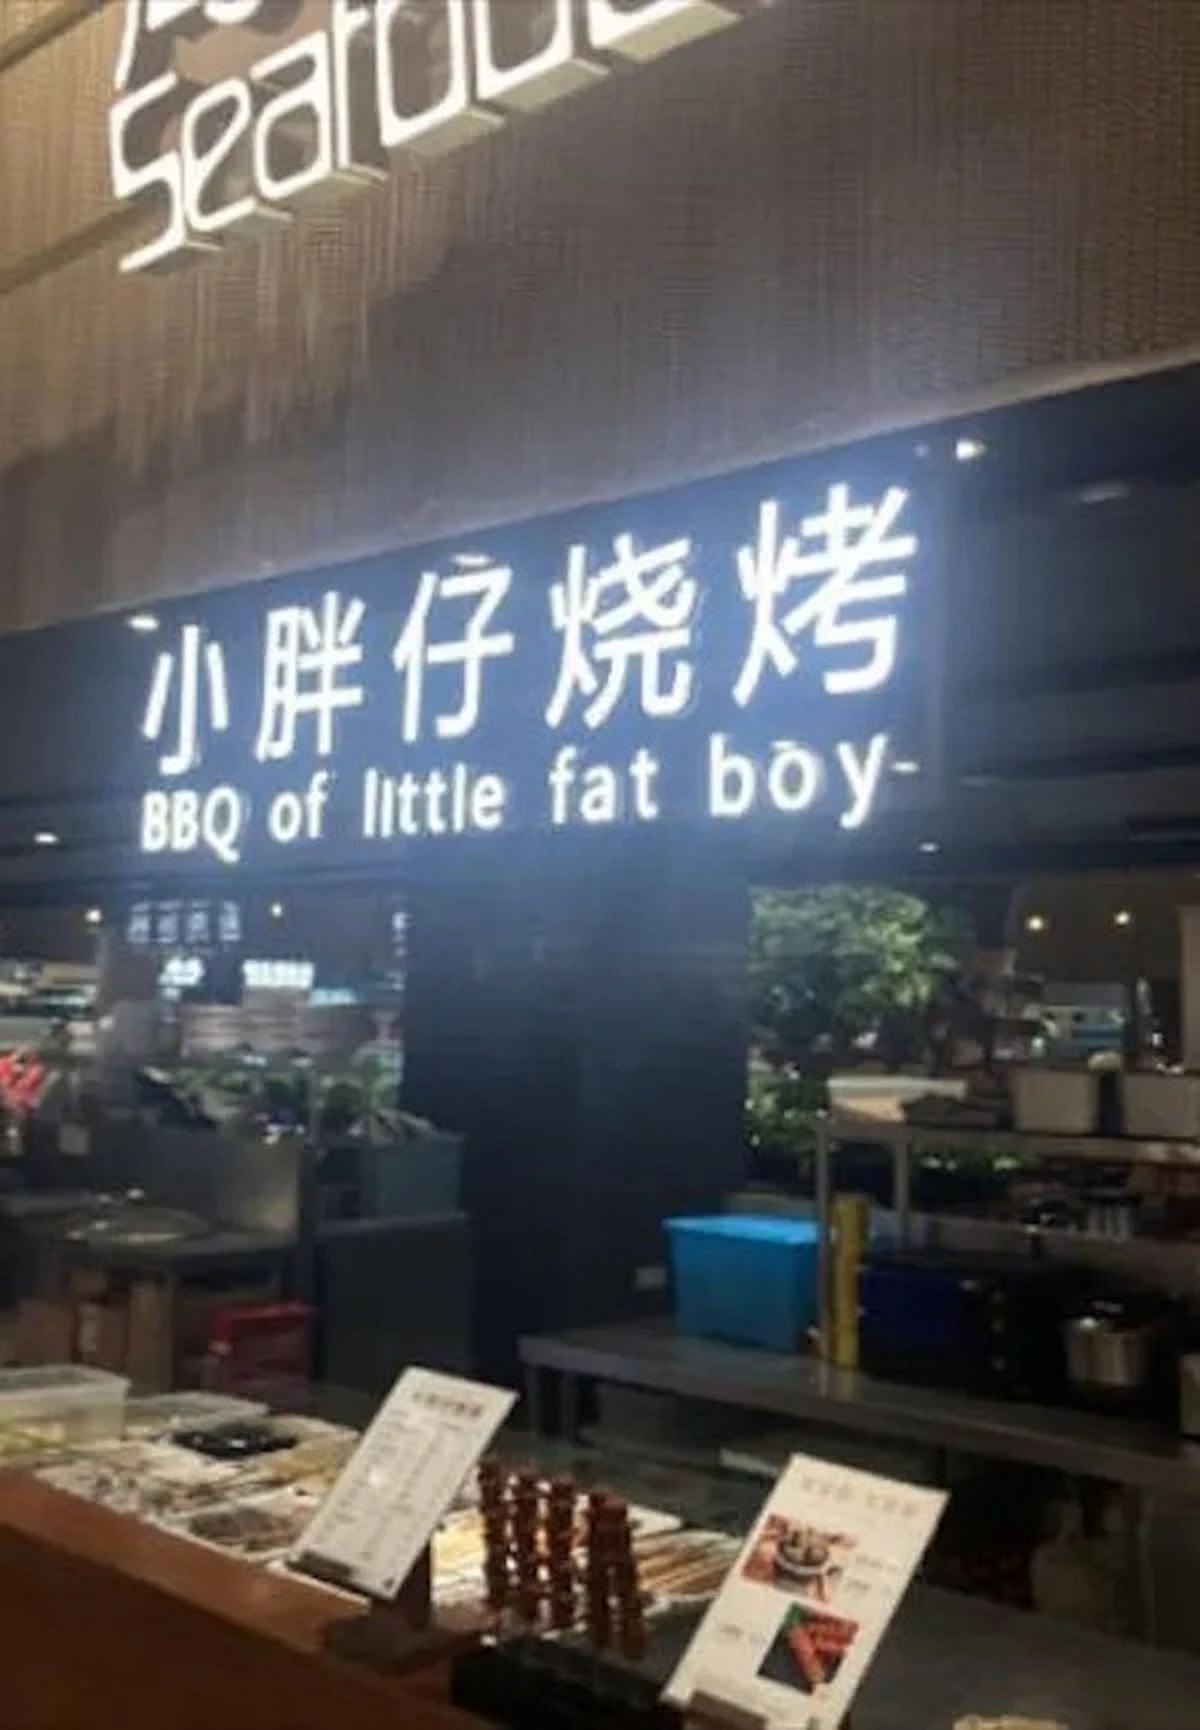 market - Sea Bbq of little fat boy